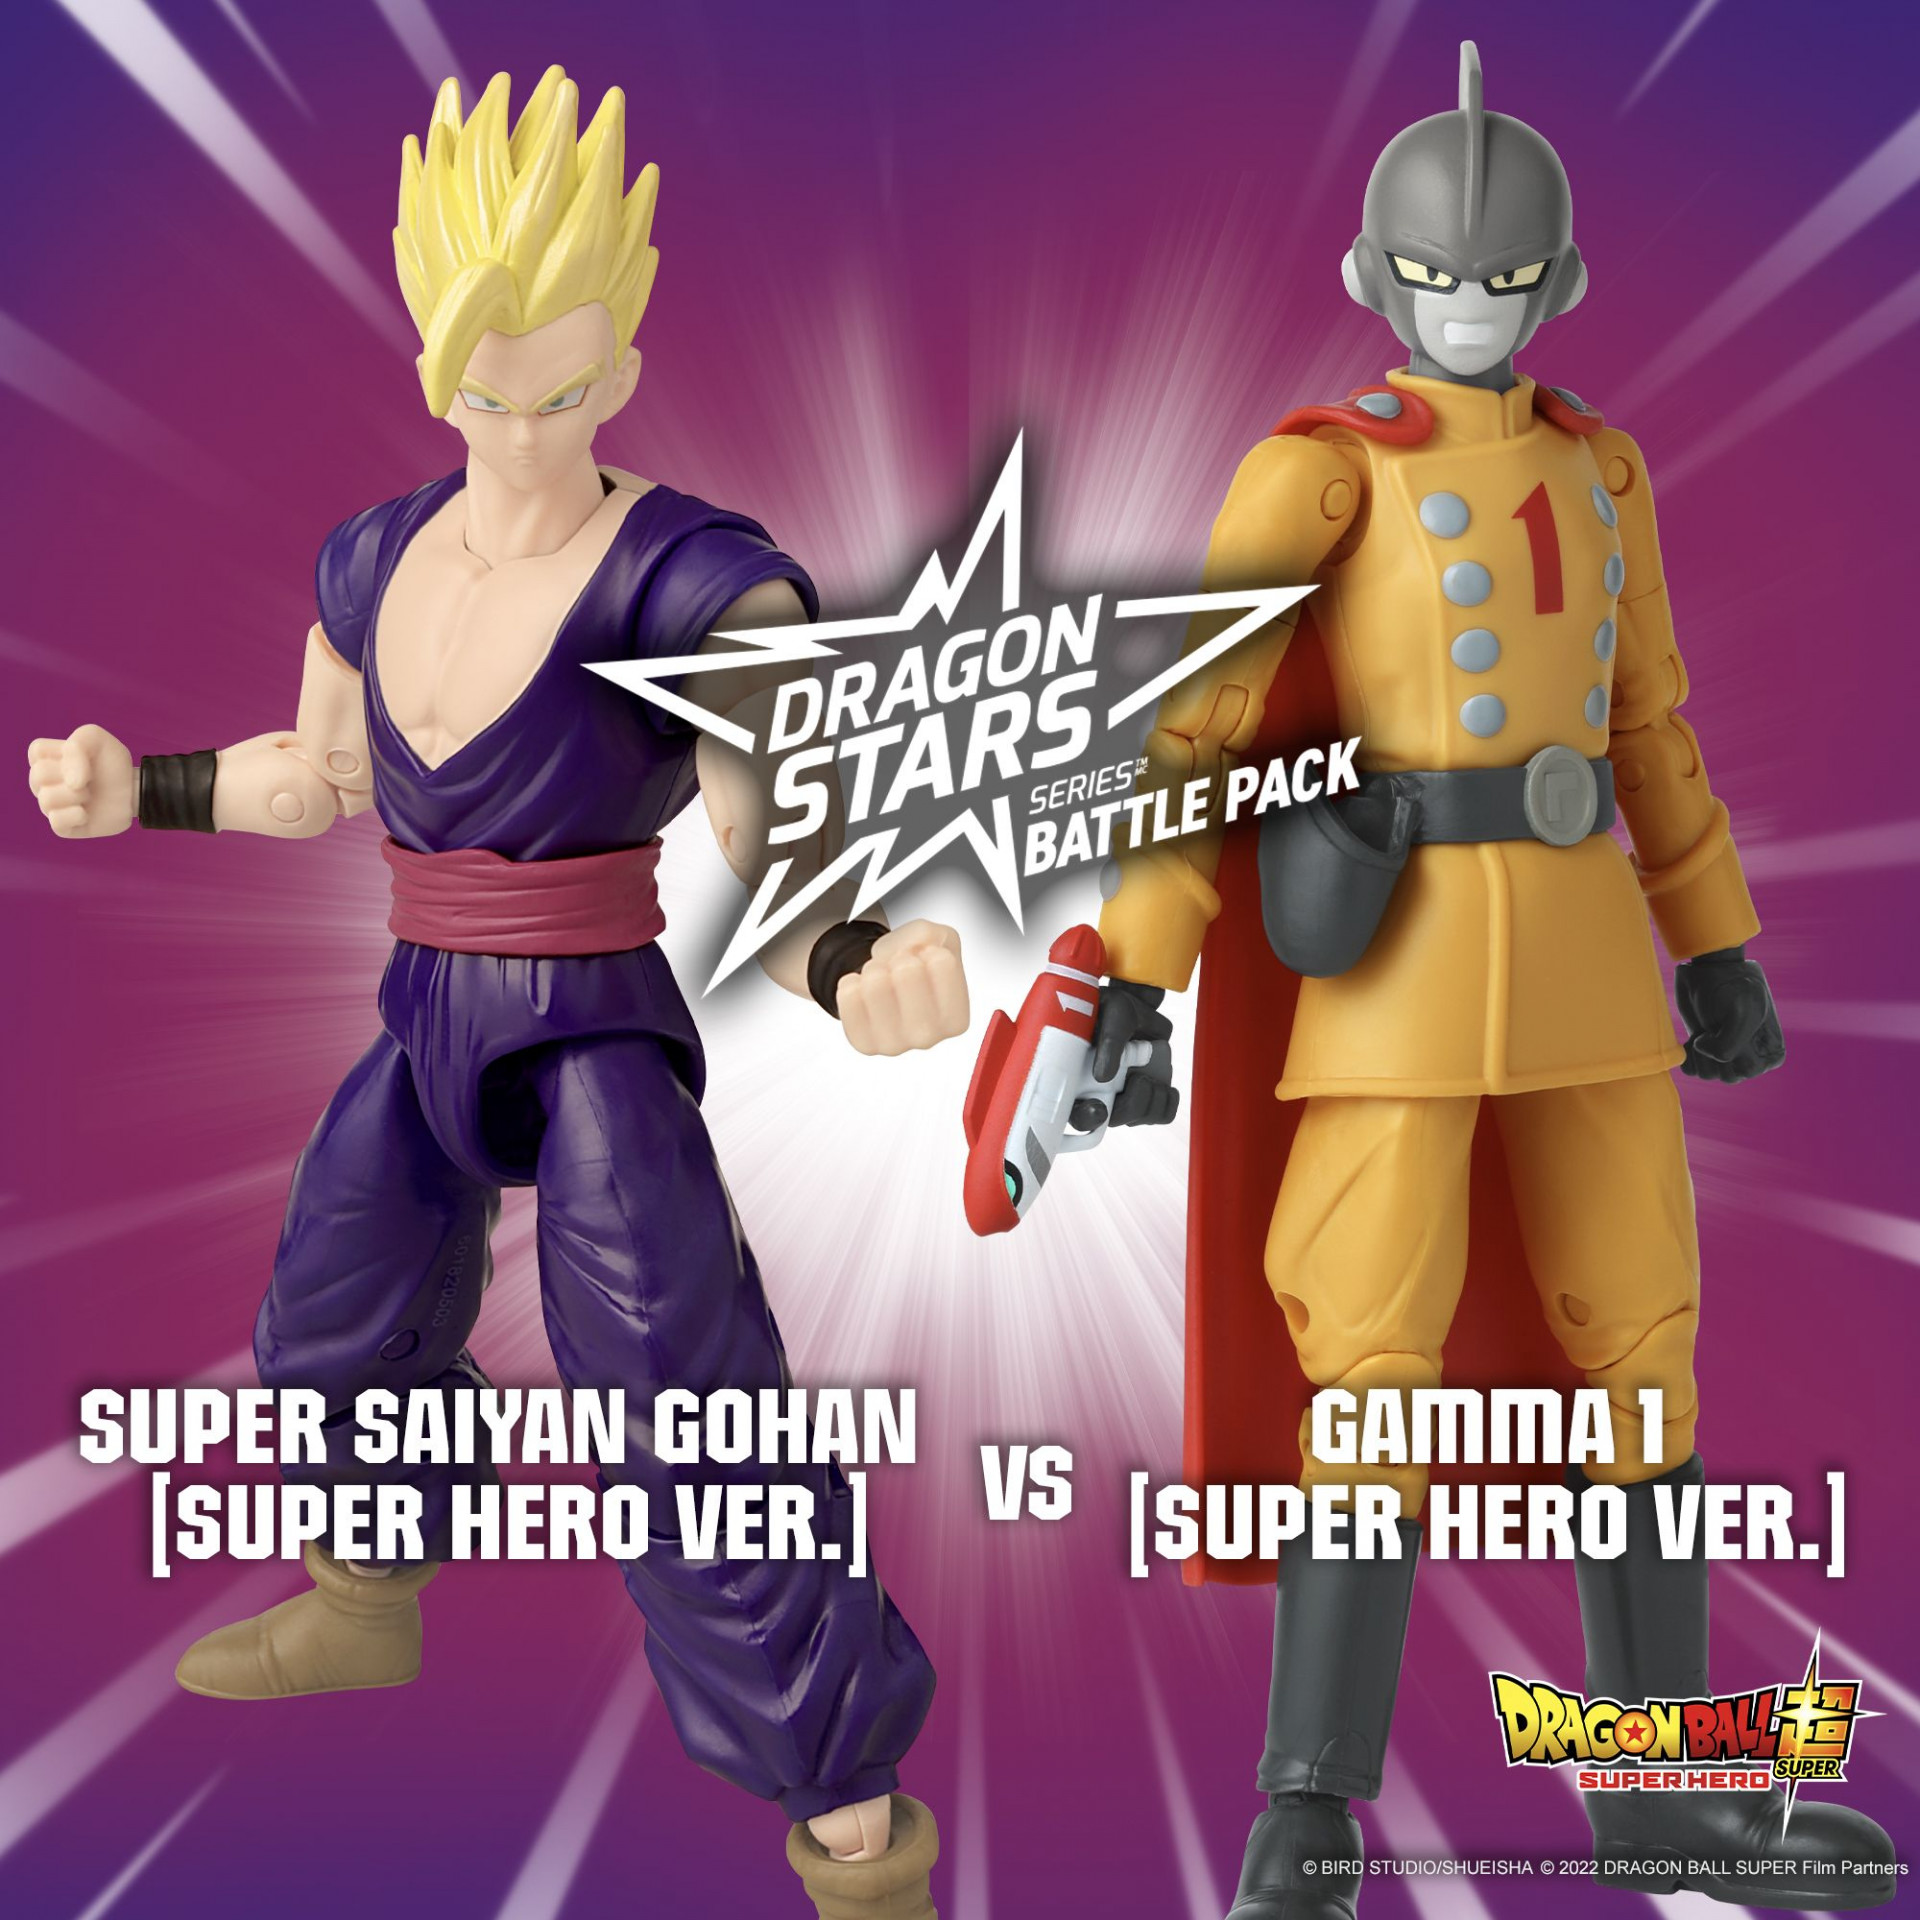 Zwei-Figuren-Set mit Super Saiyan Gohan und Gamma 1 aus Dragon Ball Super: SUPER HERO kommt in die Battle Pack-Reihe der Dragon Stars -Serie!